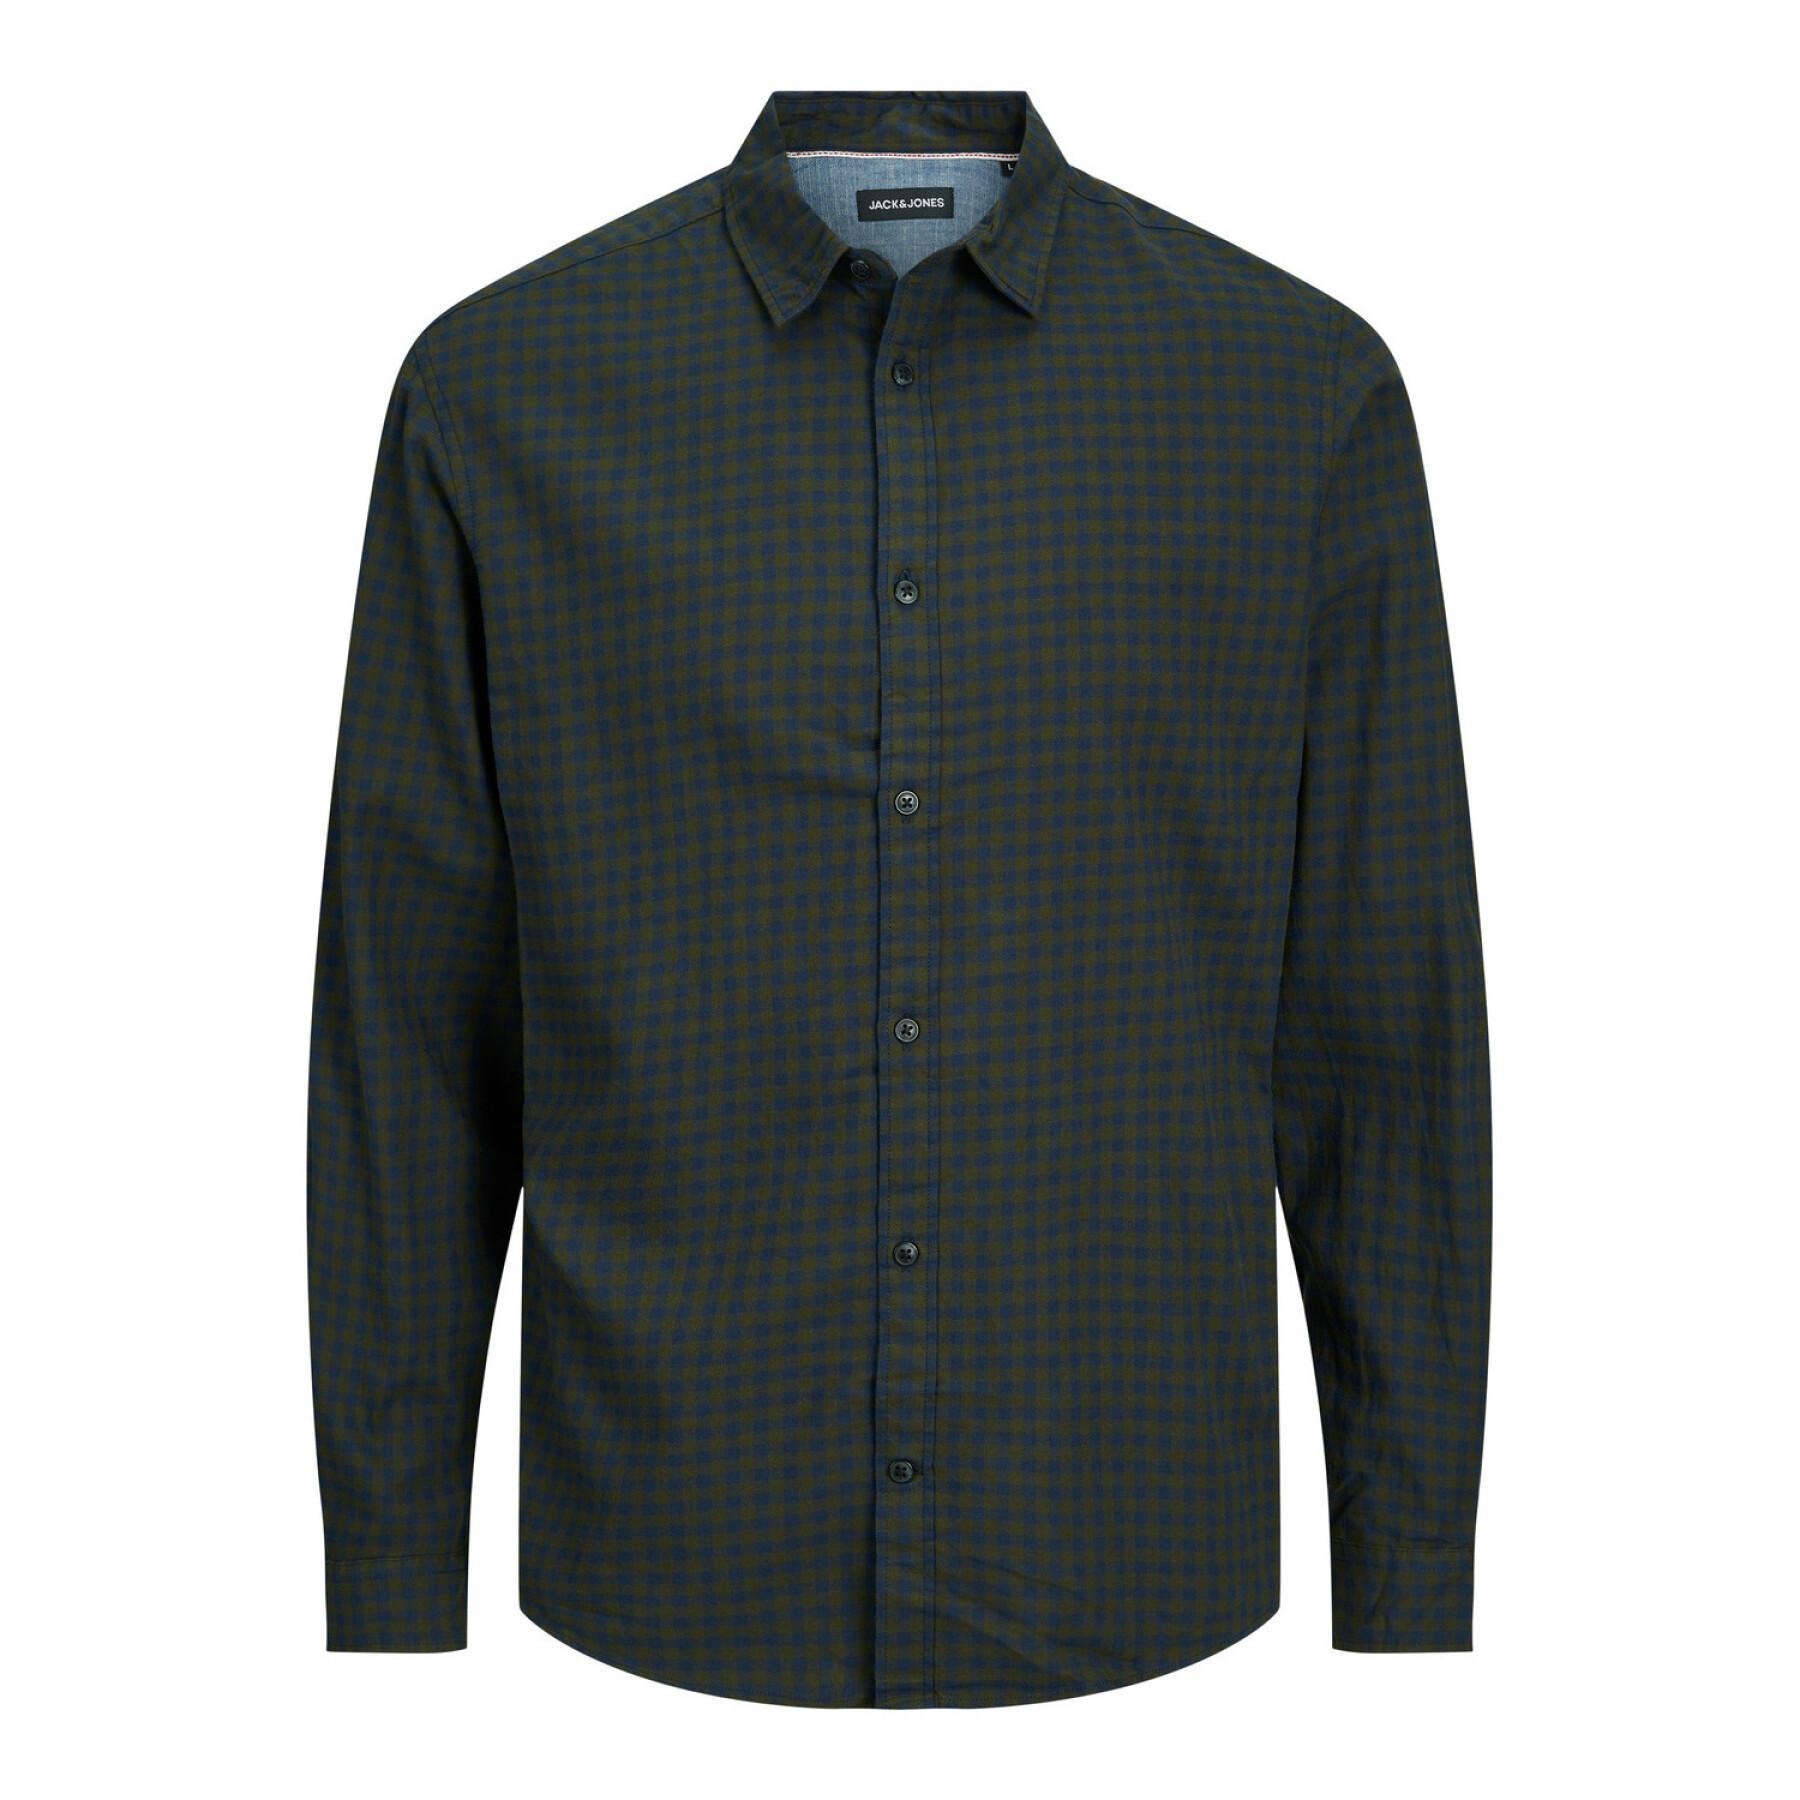 Long-sleeved plaid shirt, twill, large size Jack & Jones Gingham